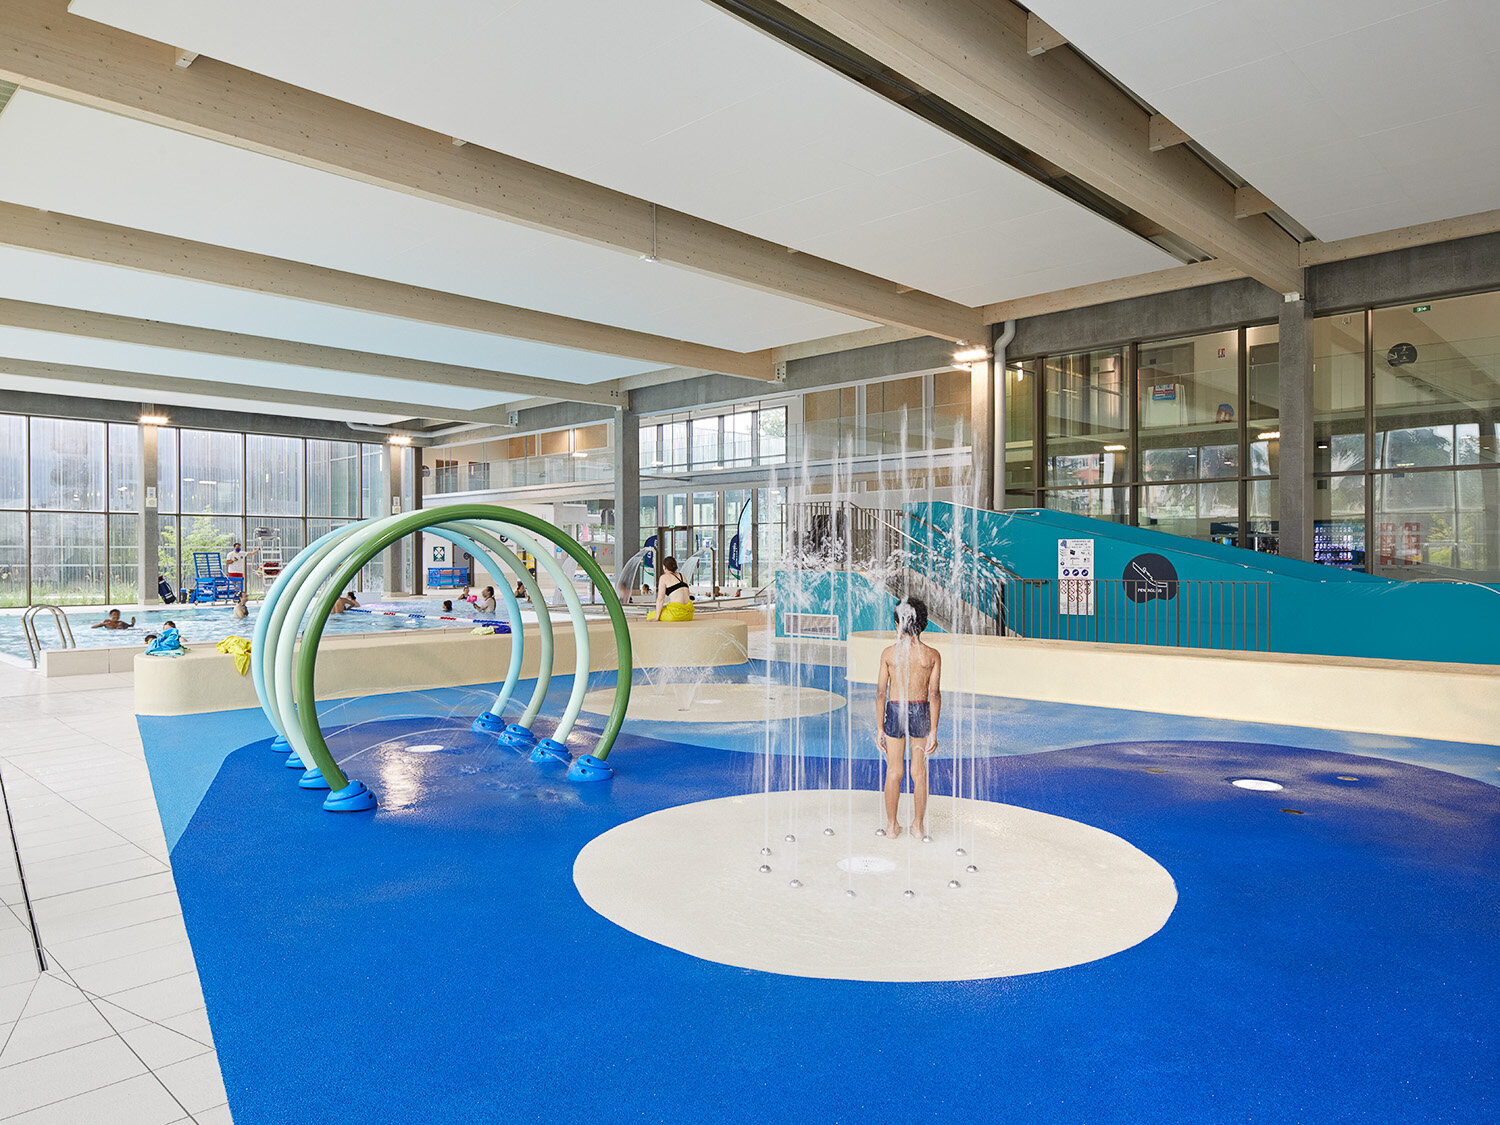  L'O Aquatic Center - ANMA and BVL Architecture 